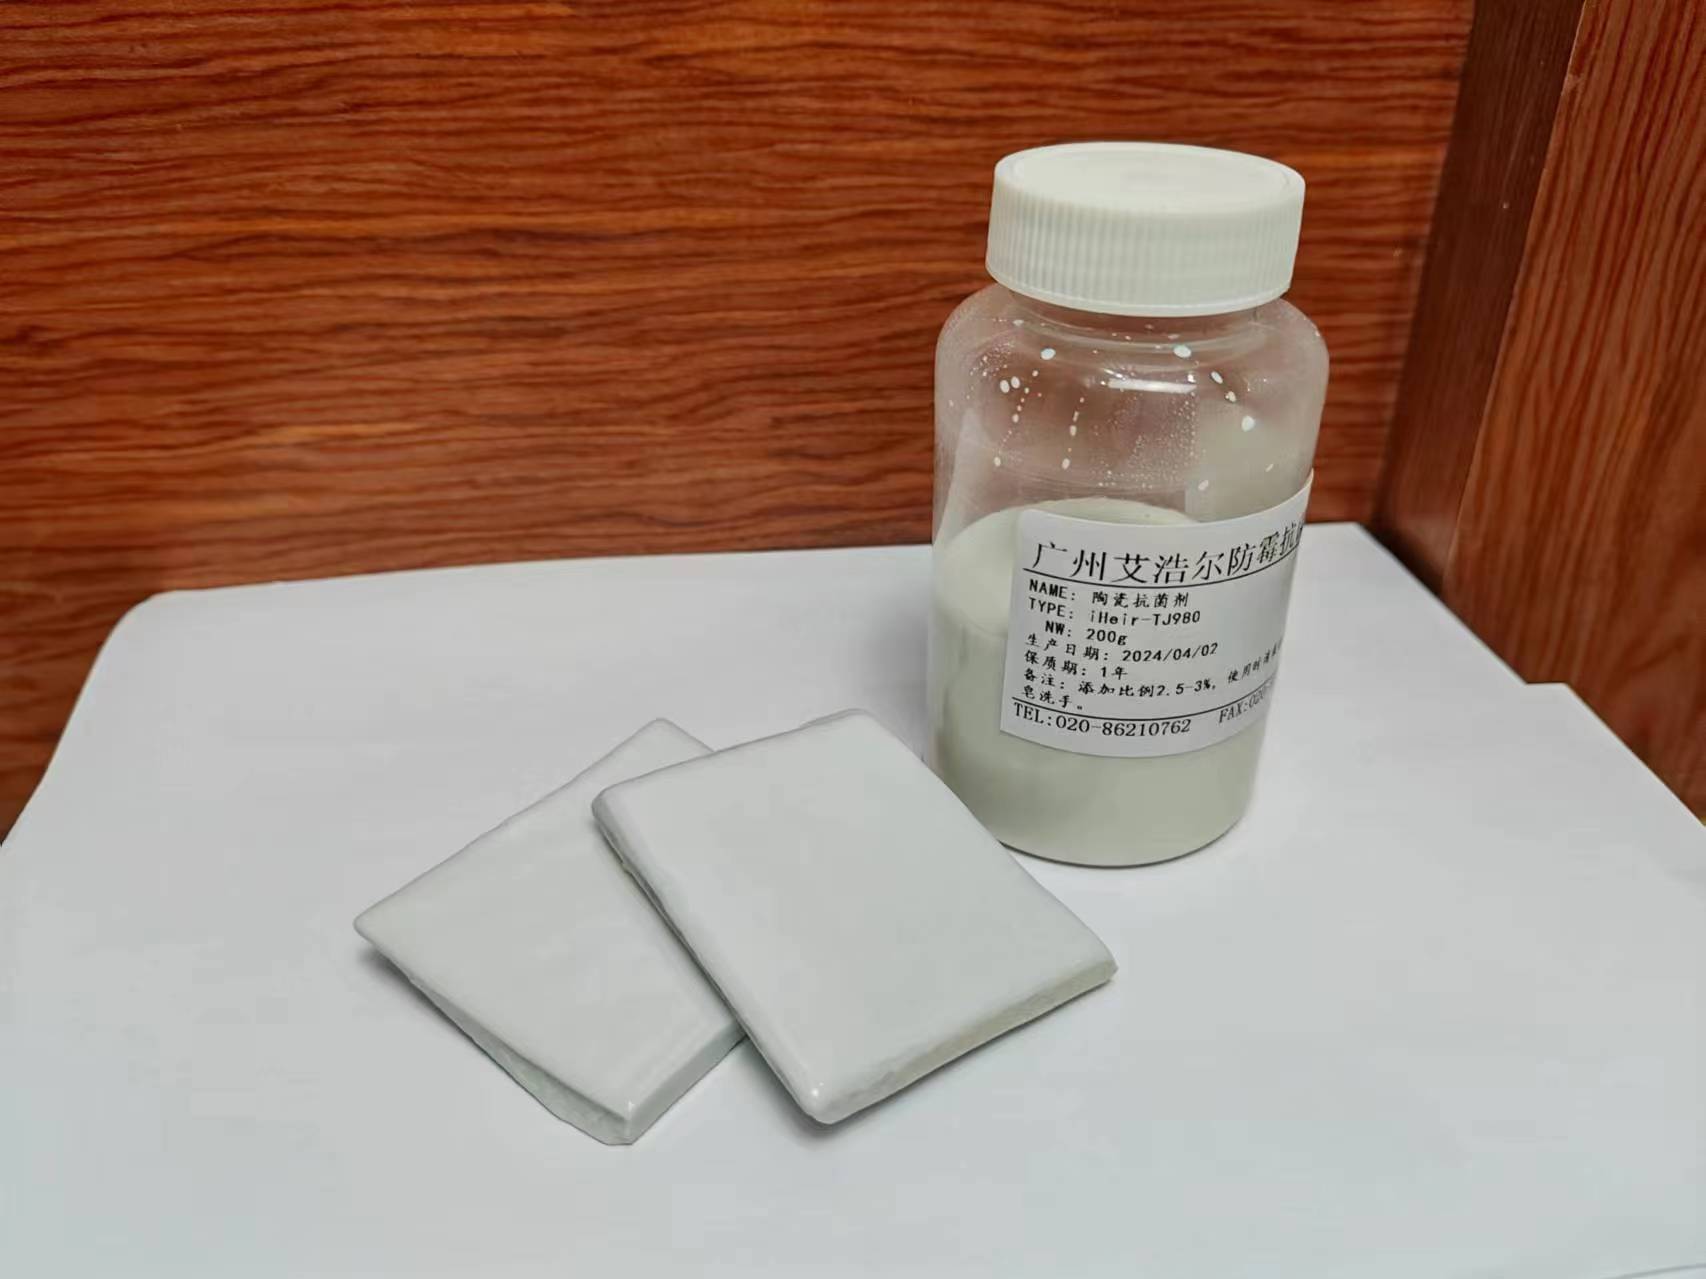 卫浴陶瓷抗菌剂：耐高温液体抗菌剂的应用与优势